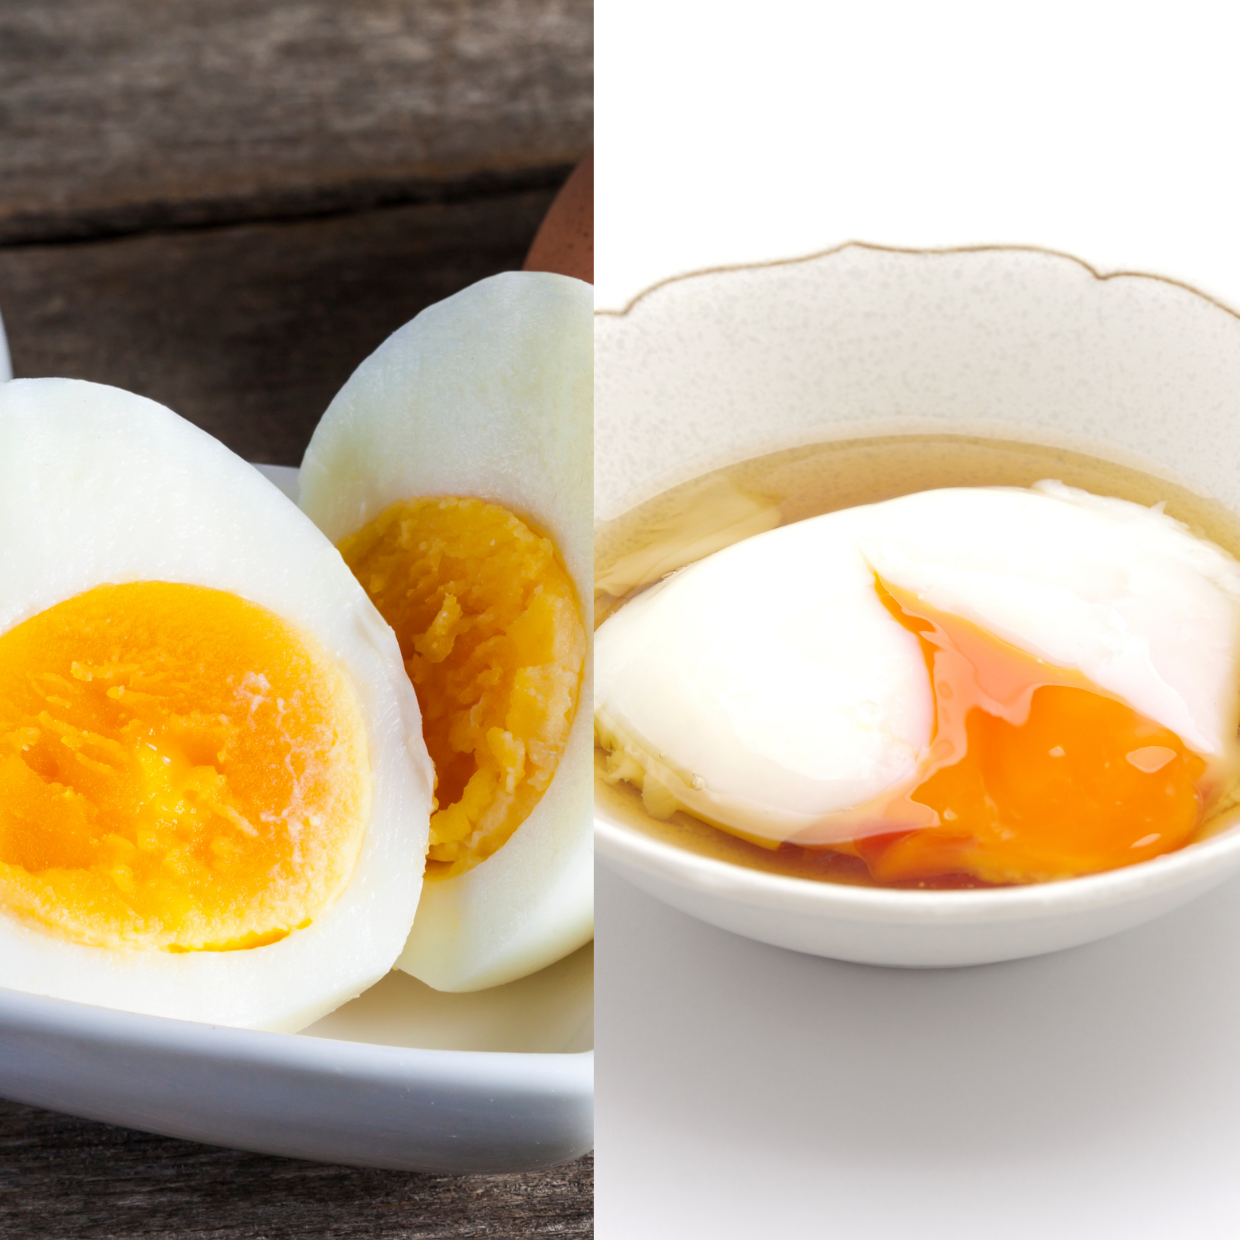  1つの鍋だけ用意すればOK！「ゆで卵」と「温玉」を同時に作る裏ワザ 